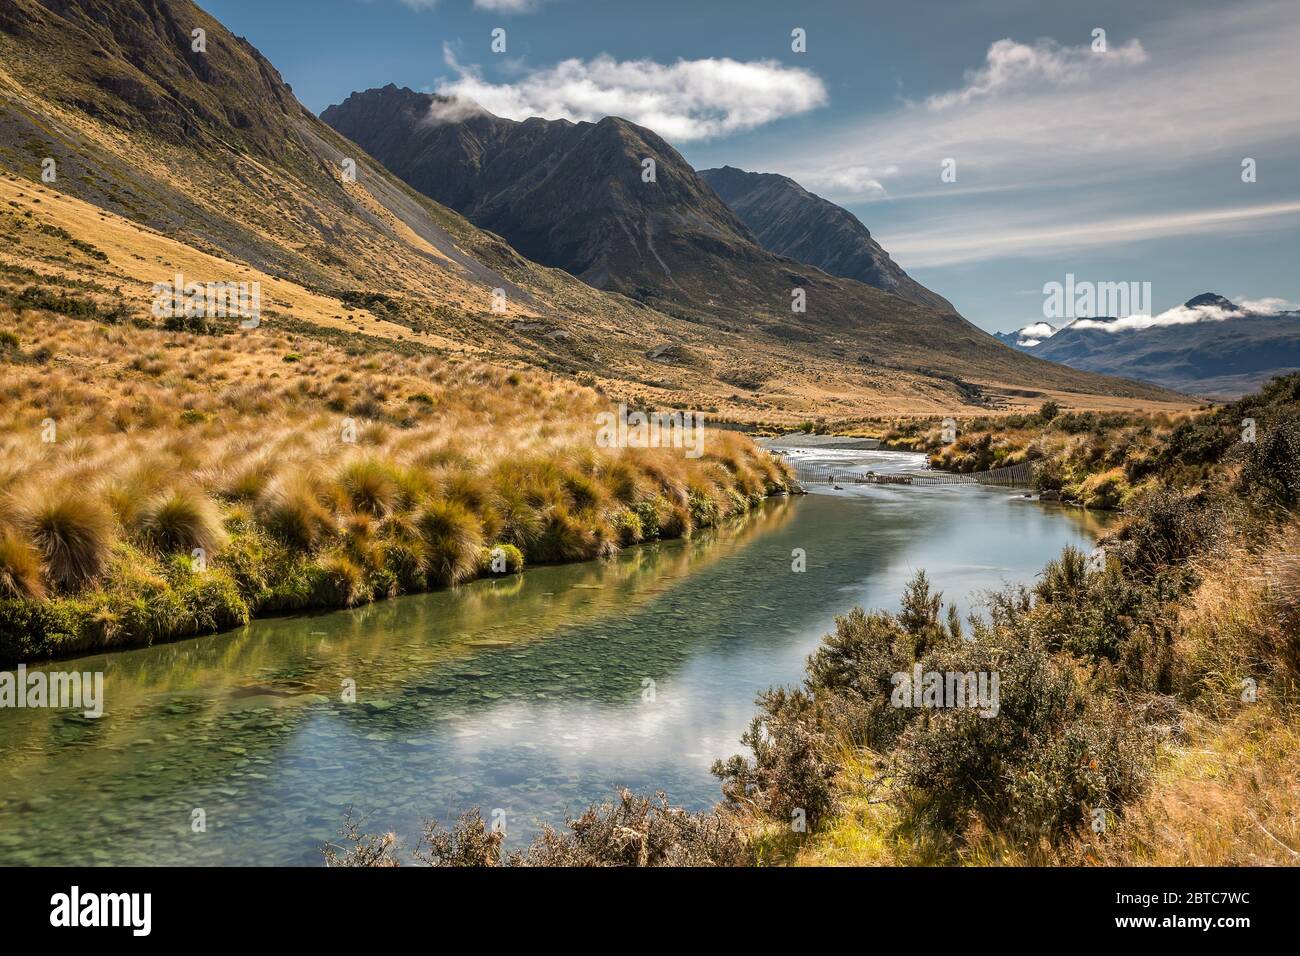 Mararoa River, New Zealand, March 2020 Stock Photo